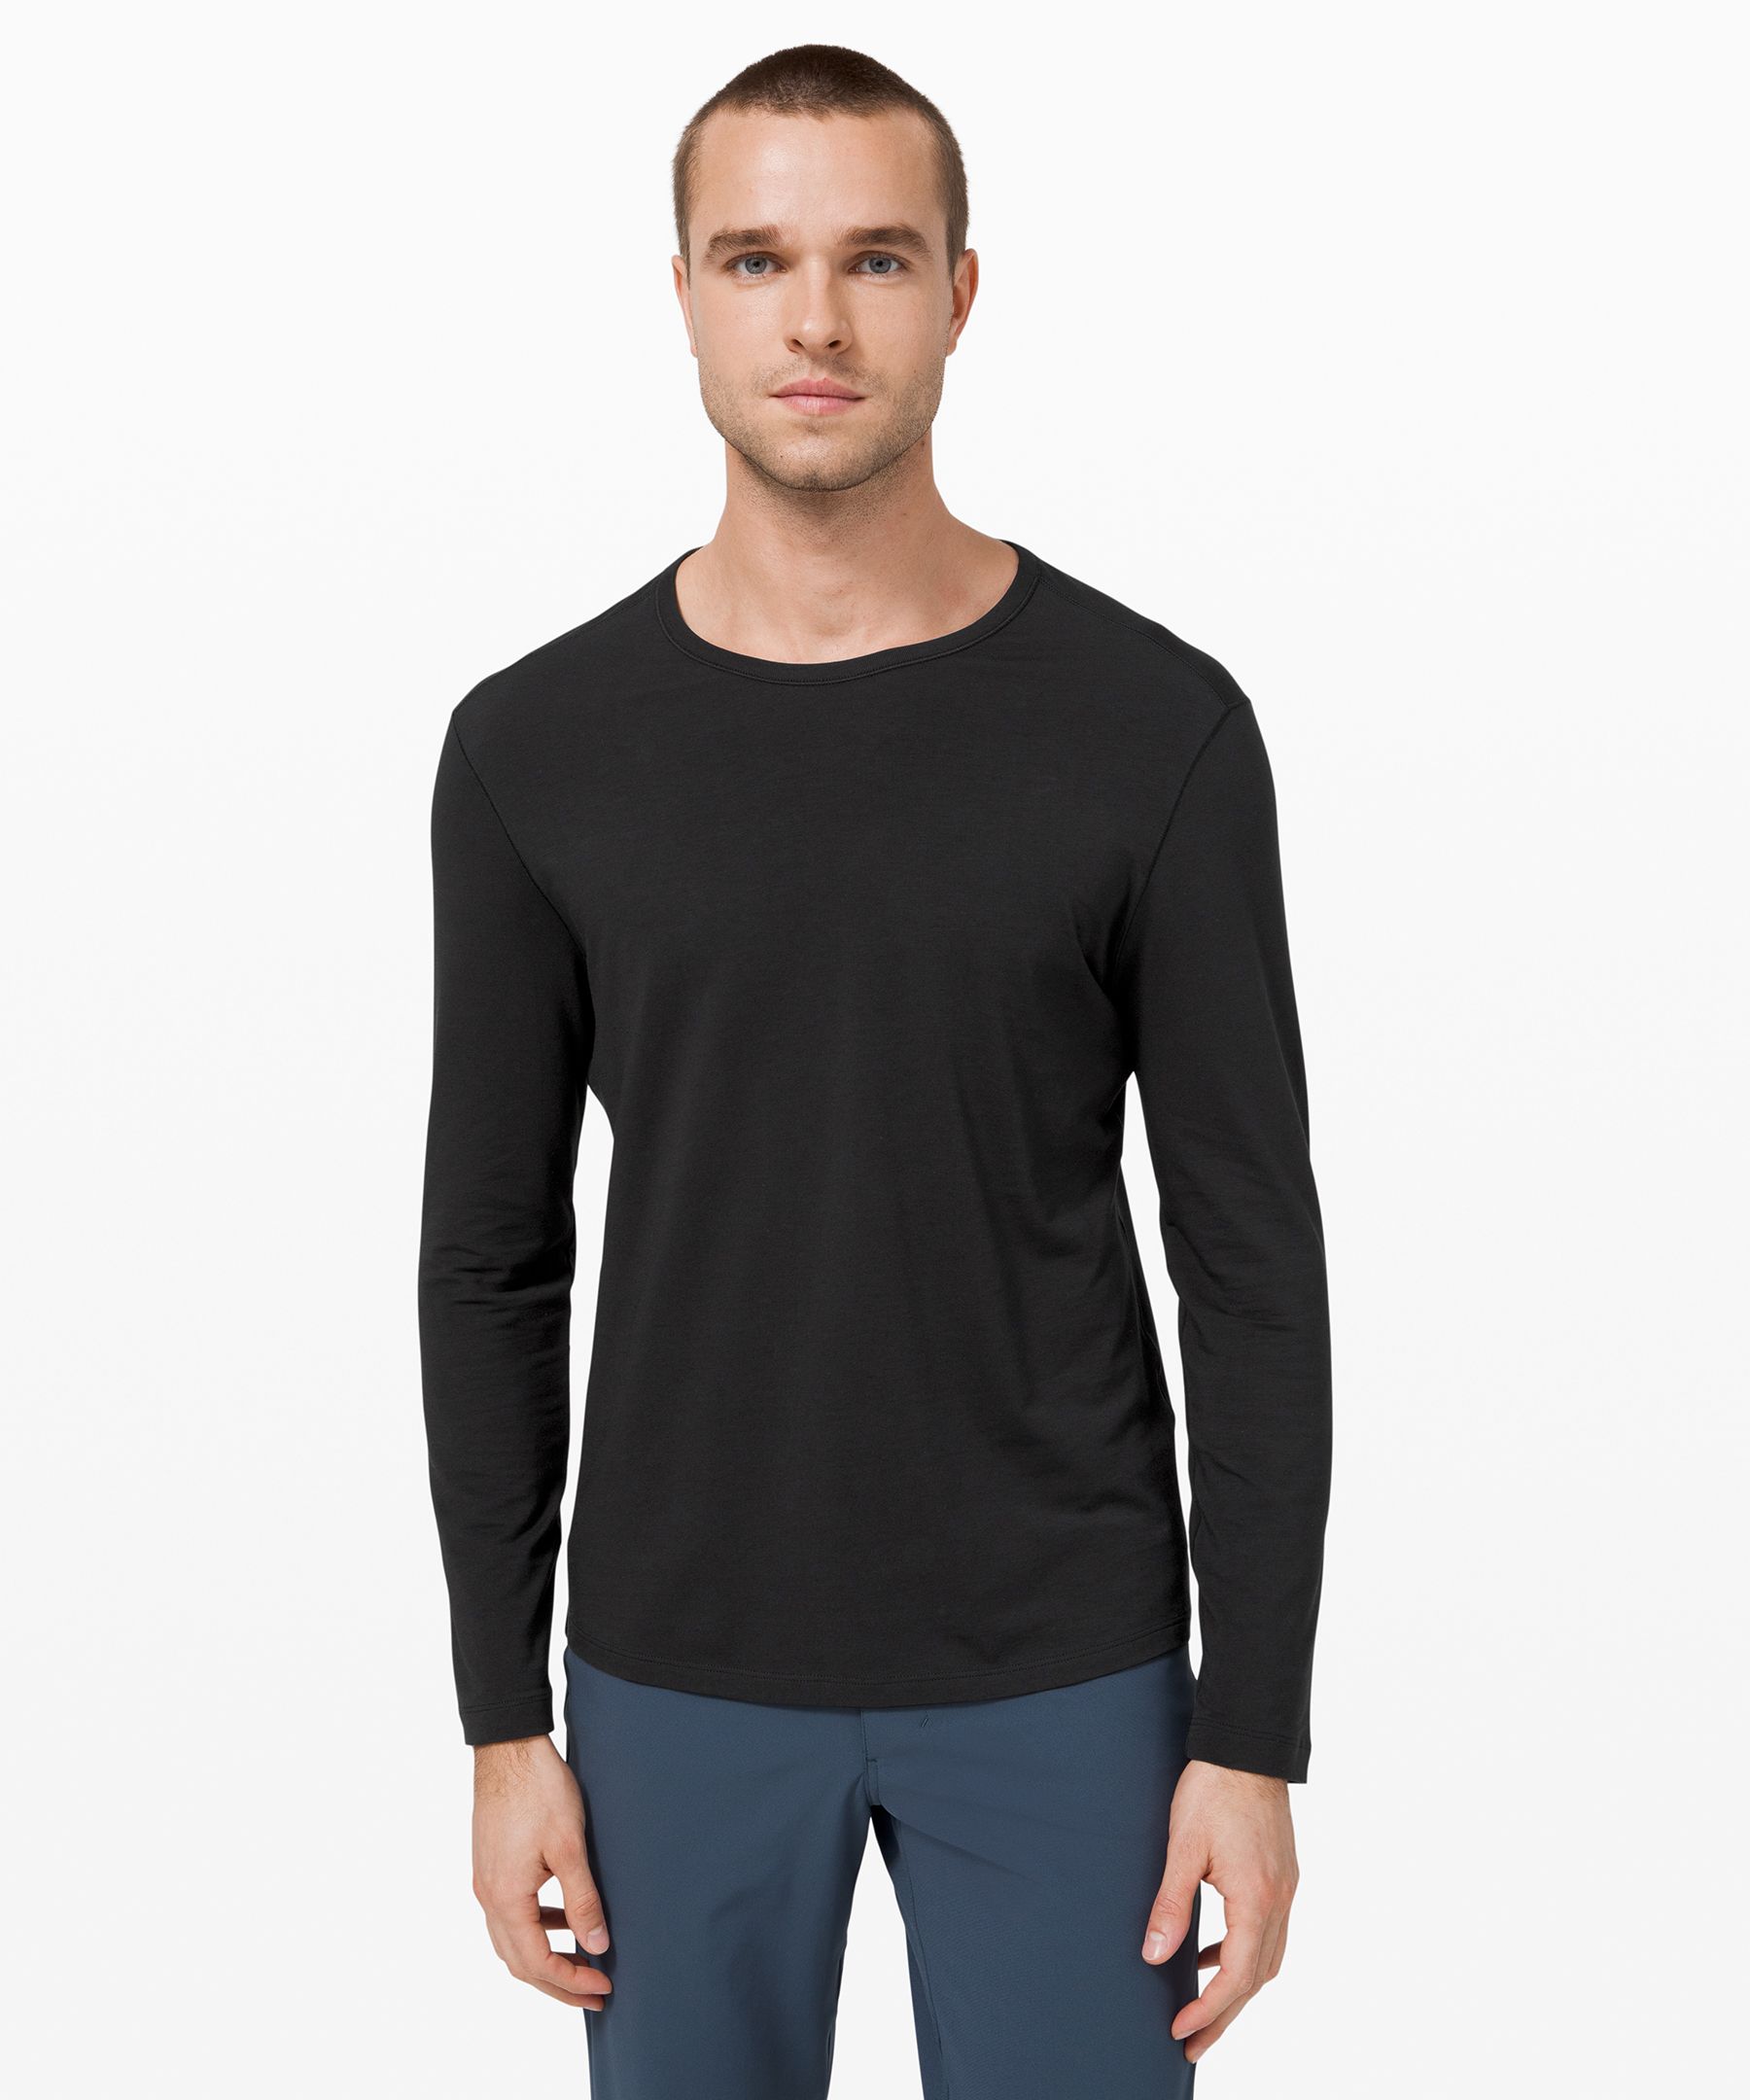 Lululemon 5 Year Basic Long Sleeve Shirt In Black